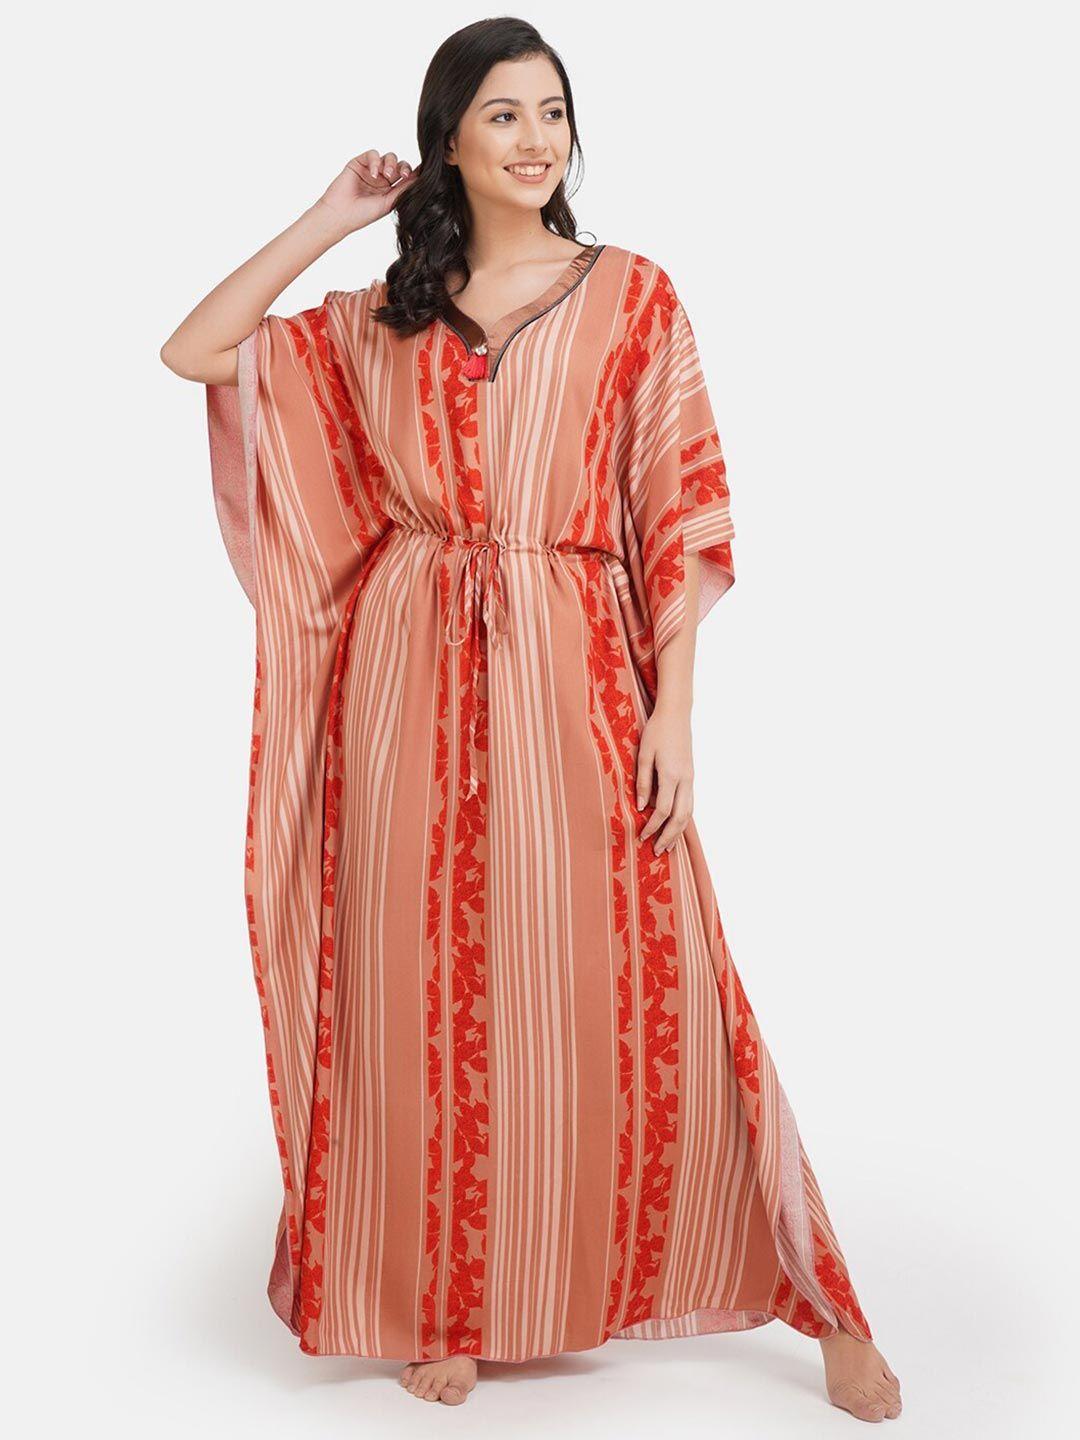 koi-sleepwear-women-orange-striped-kaftan-nightdress